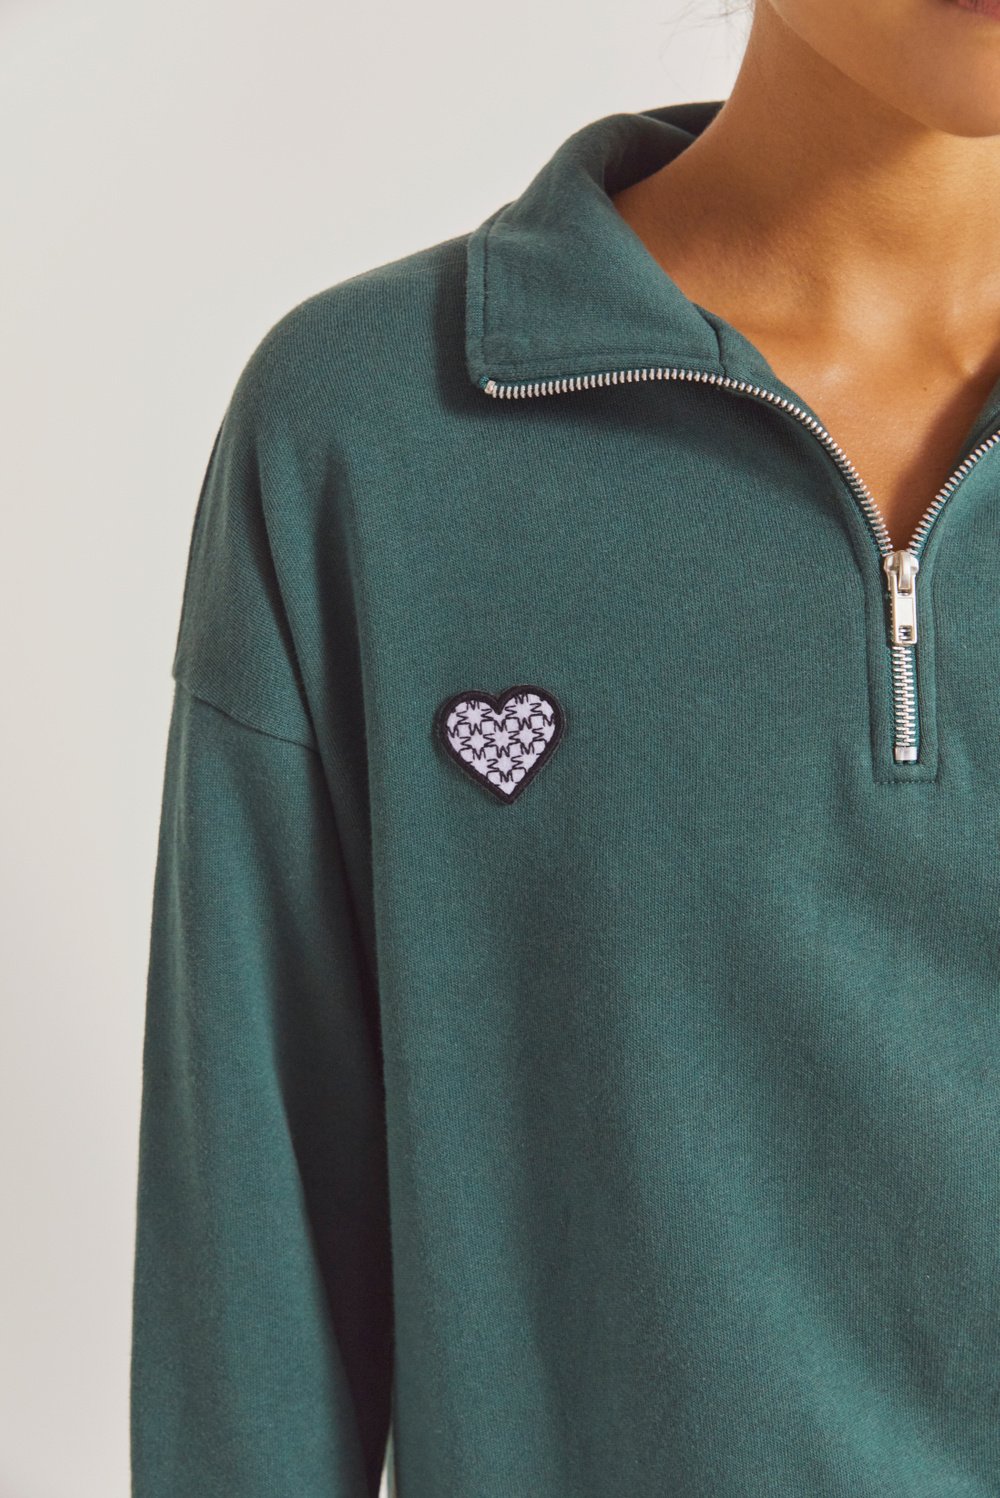 Lovers half Zip Sweatshirt Pine S Grön